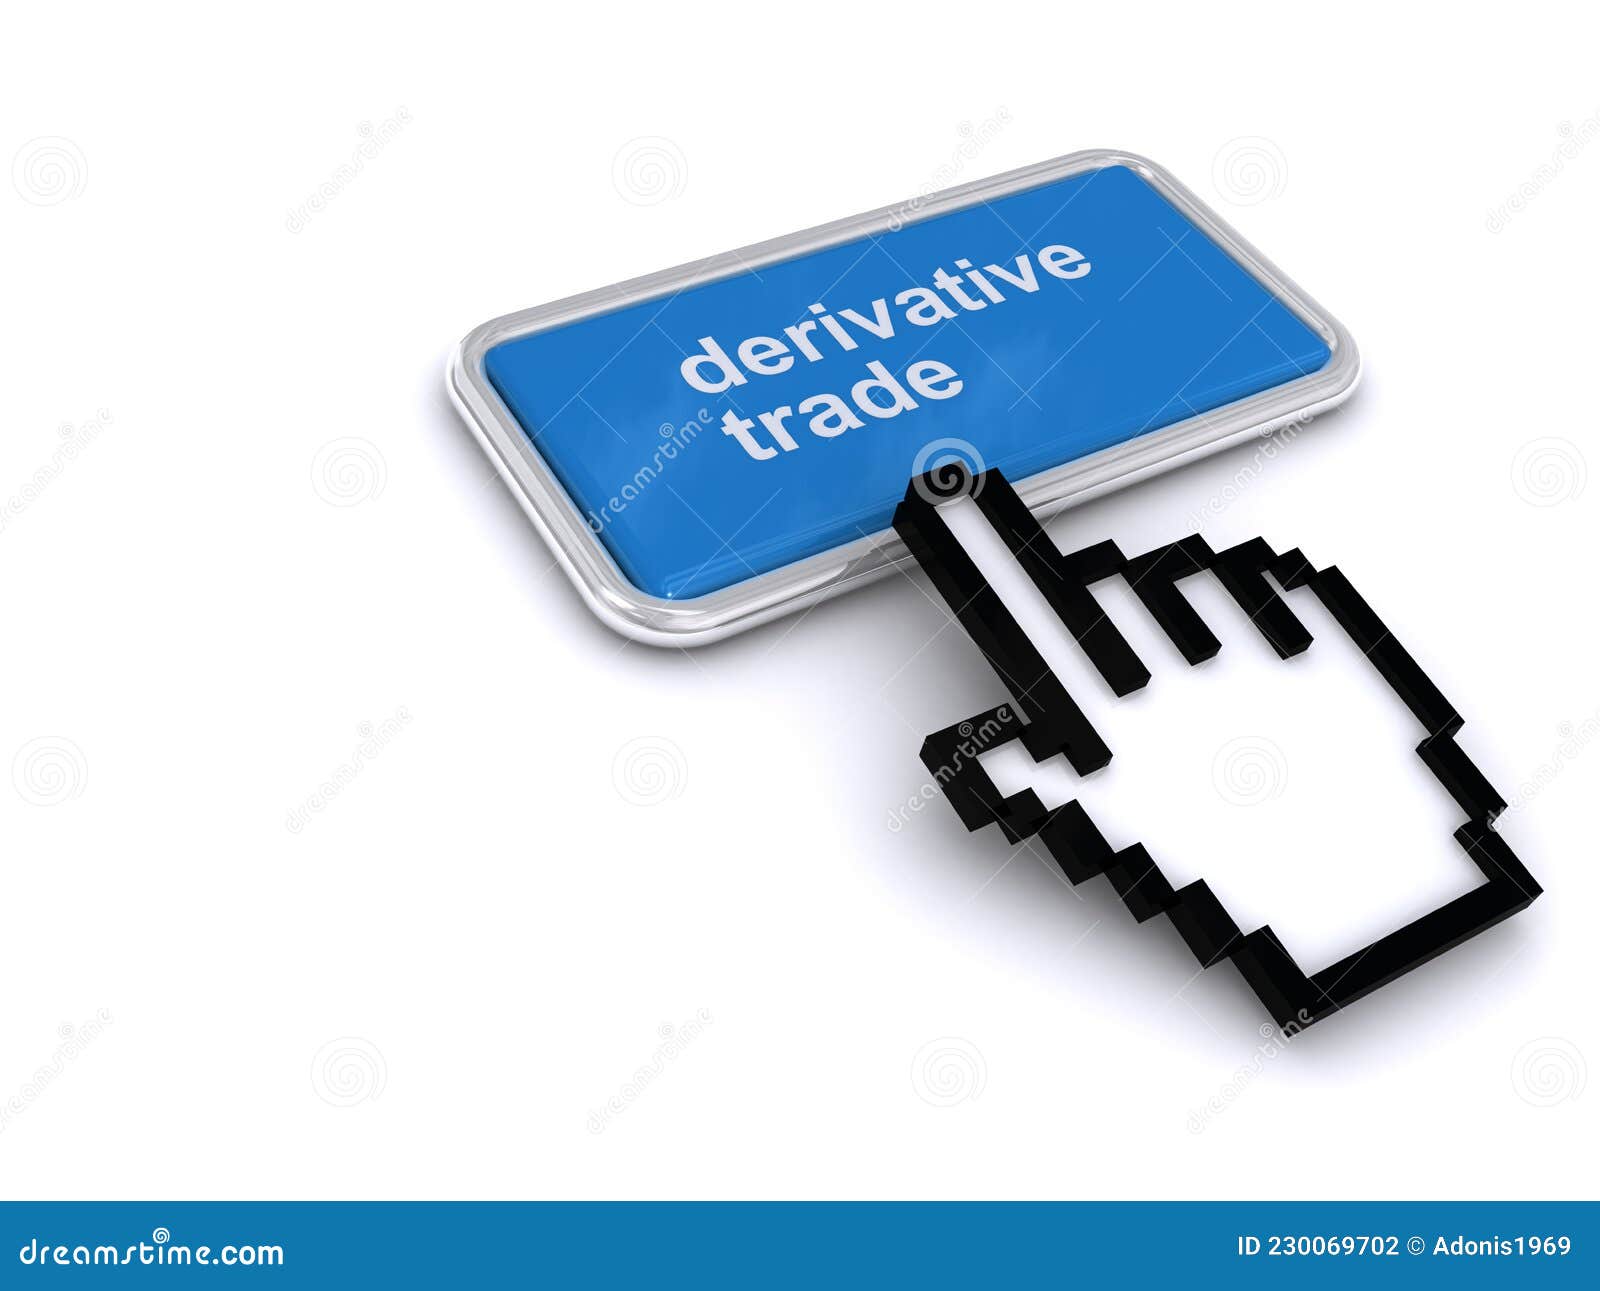 derivative trade button on white